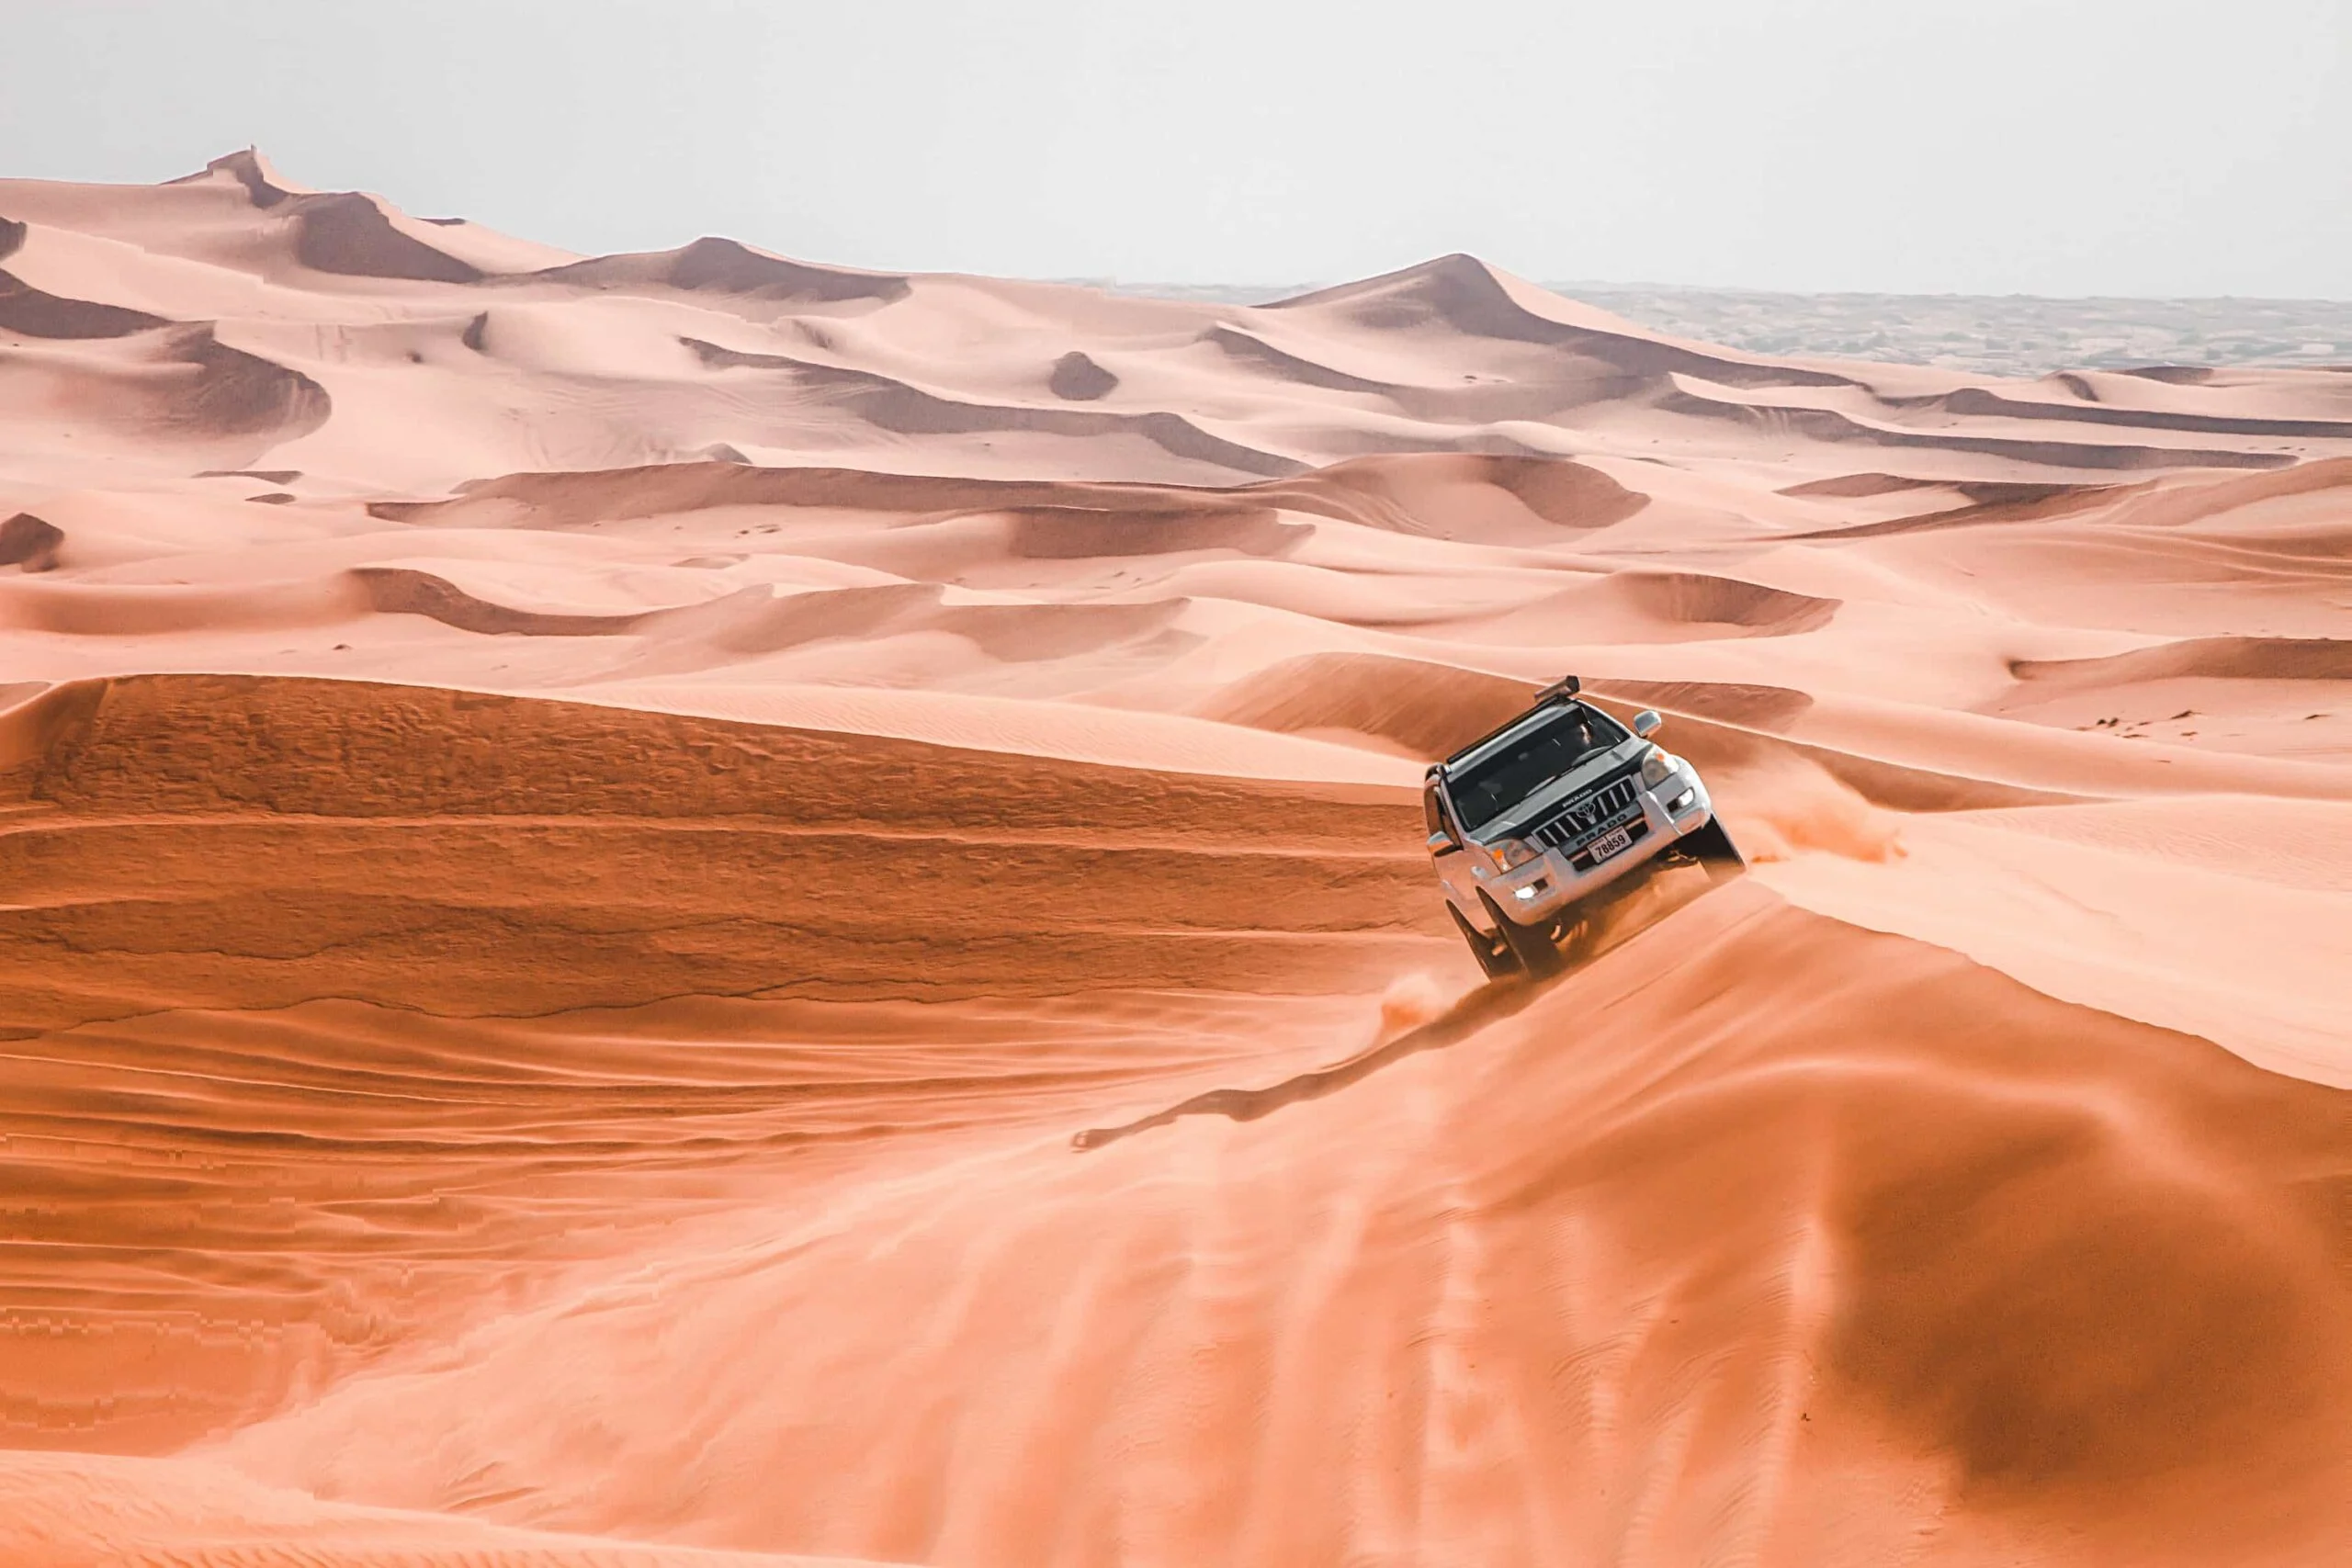 review desert safari dubai